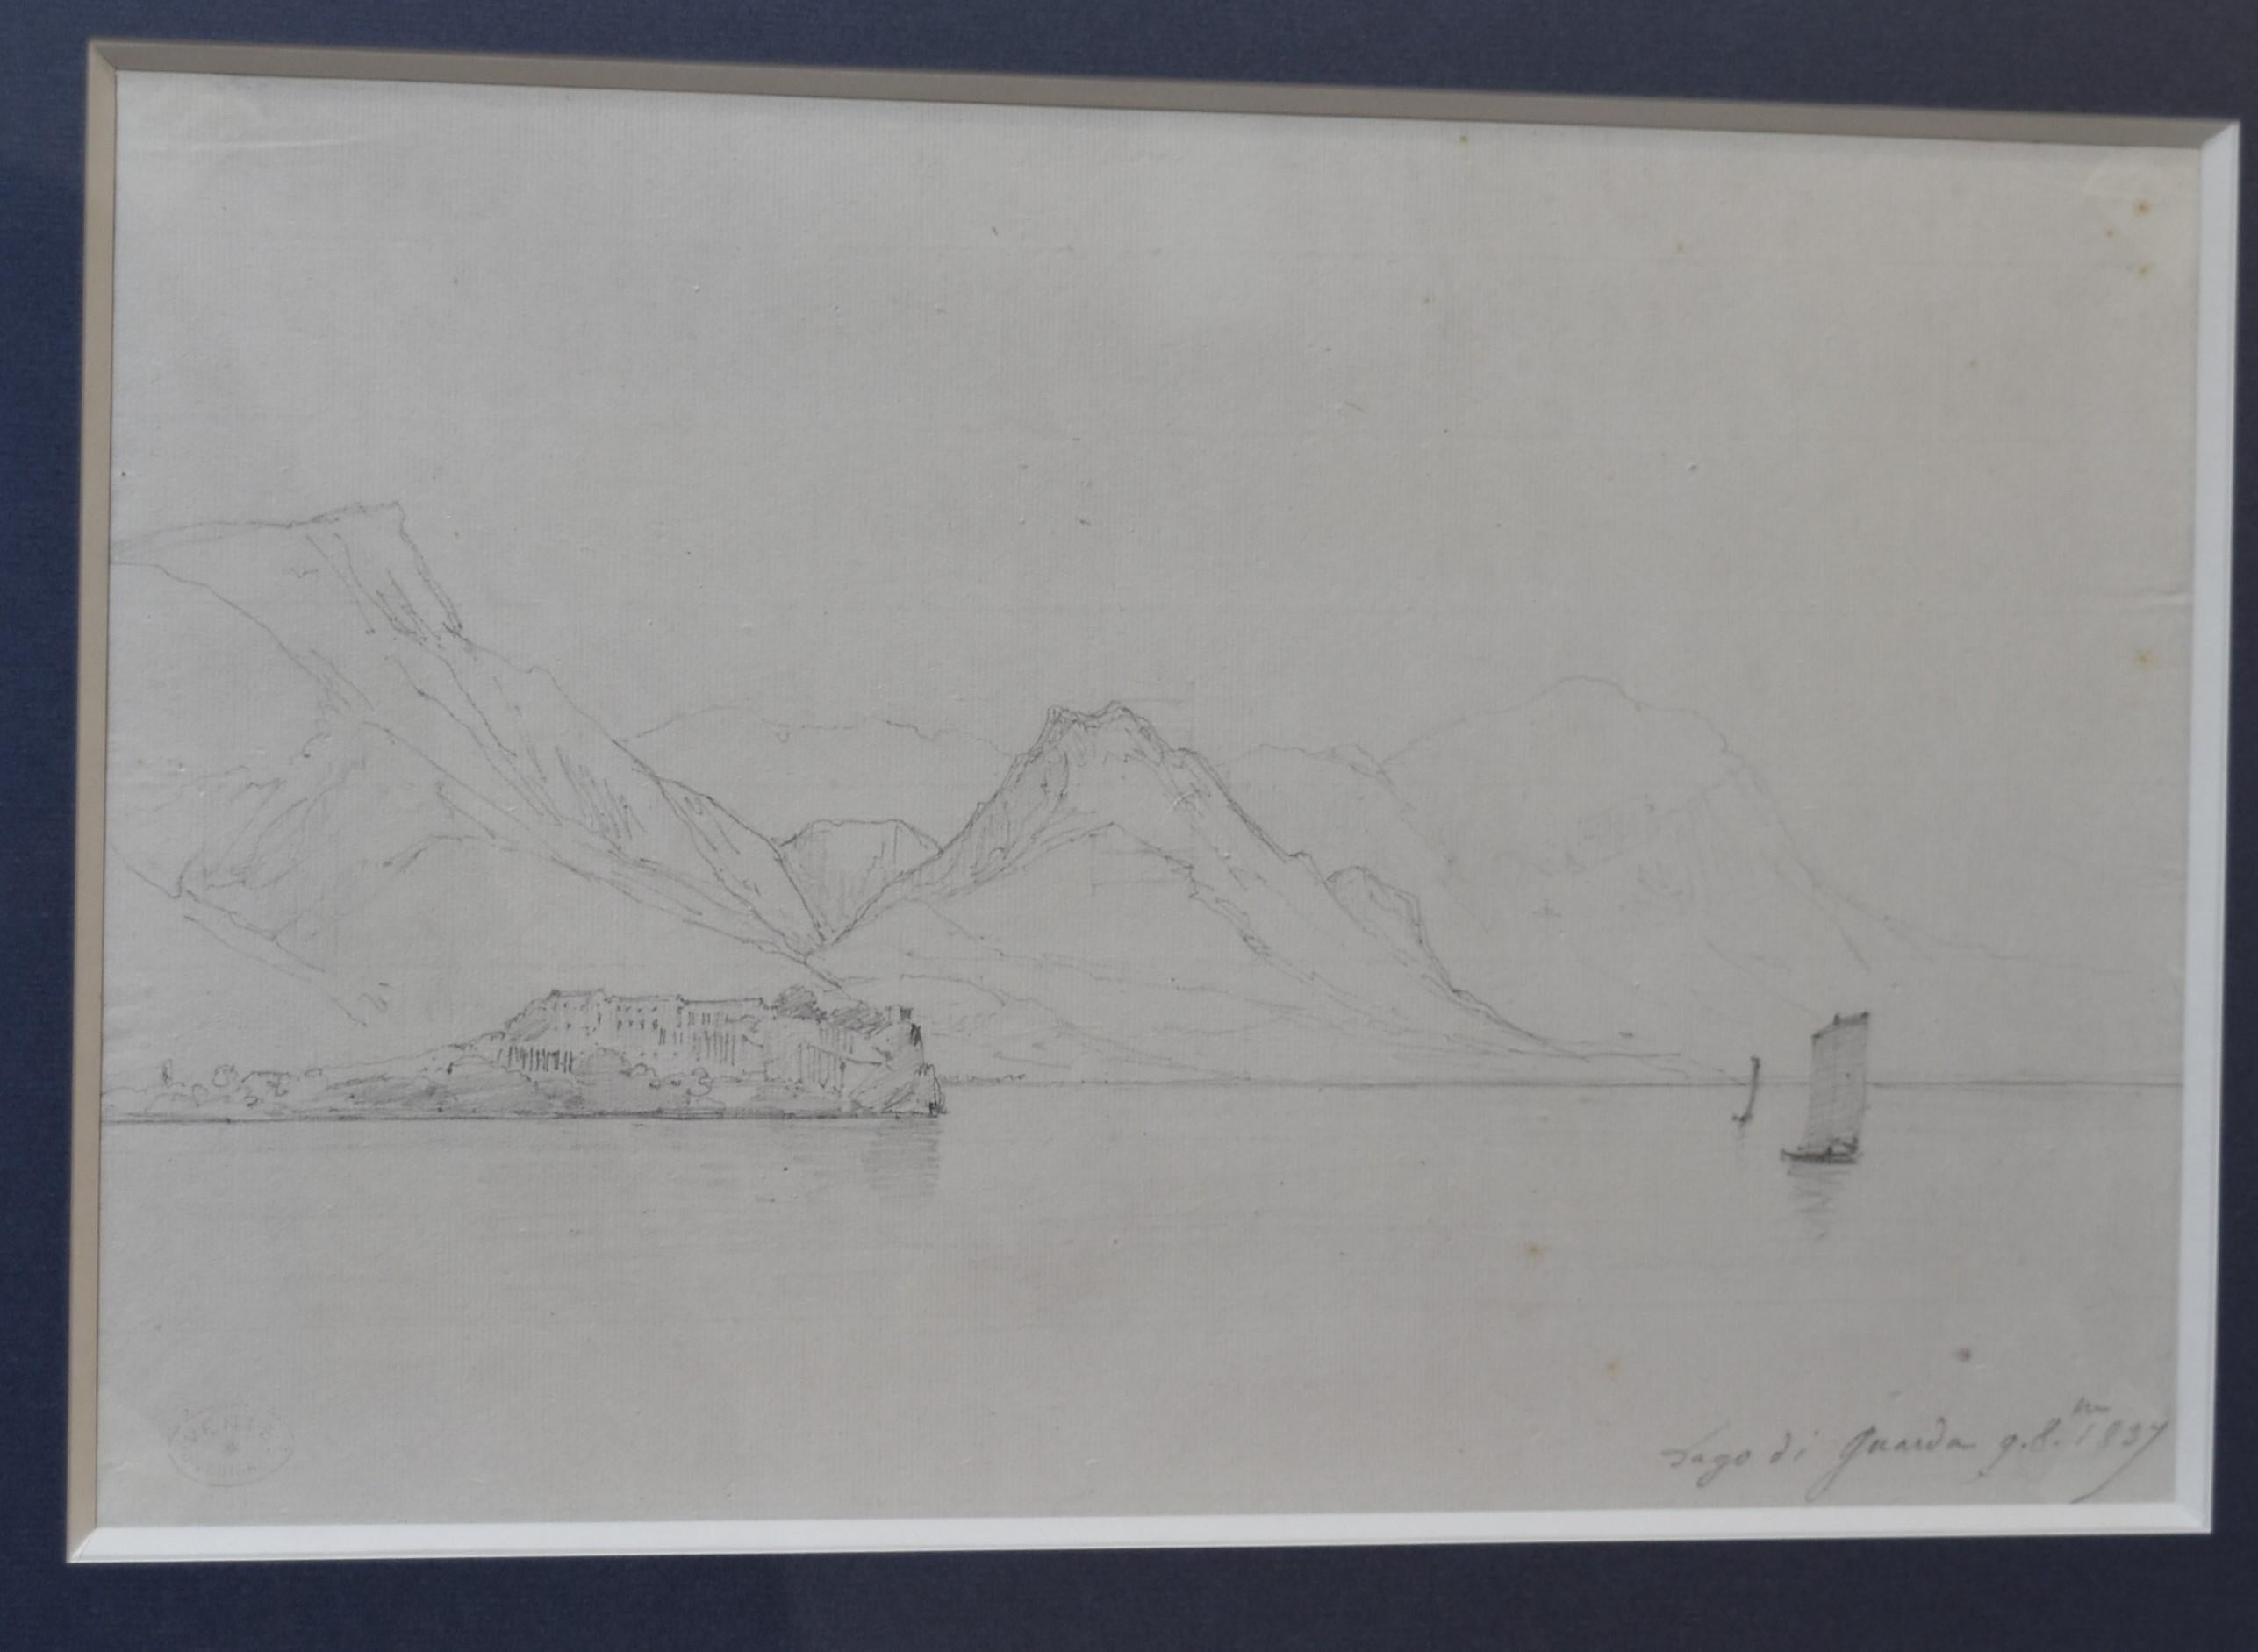 Jules Coignet (1798-1860) 
Lago di Guarda, 1837, 
Inscribed 